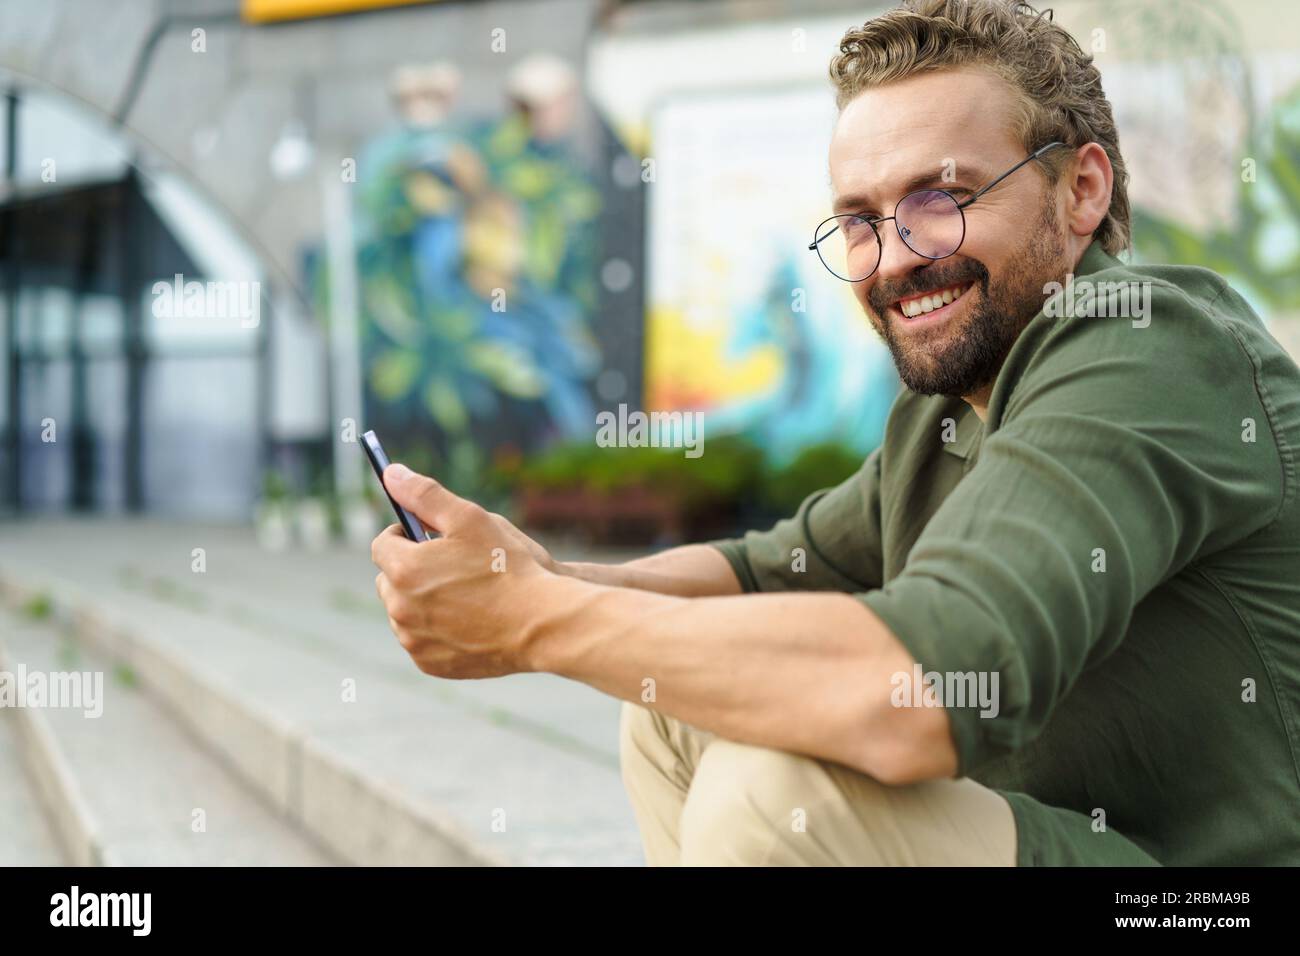 Ein Mann sitzt auf einer Steintreppe auf der Straße und benutzt einen Pocket PC. Mit seinem kompakten und tragbaren Gerät in der Hand kombiniert er mühelos Technologie und Umgebung. Der urbane Hintergrund verleiht der Szene einen modernen Touch. Hochwertiges Foto Stockfoto